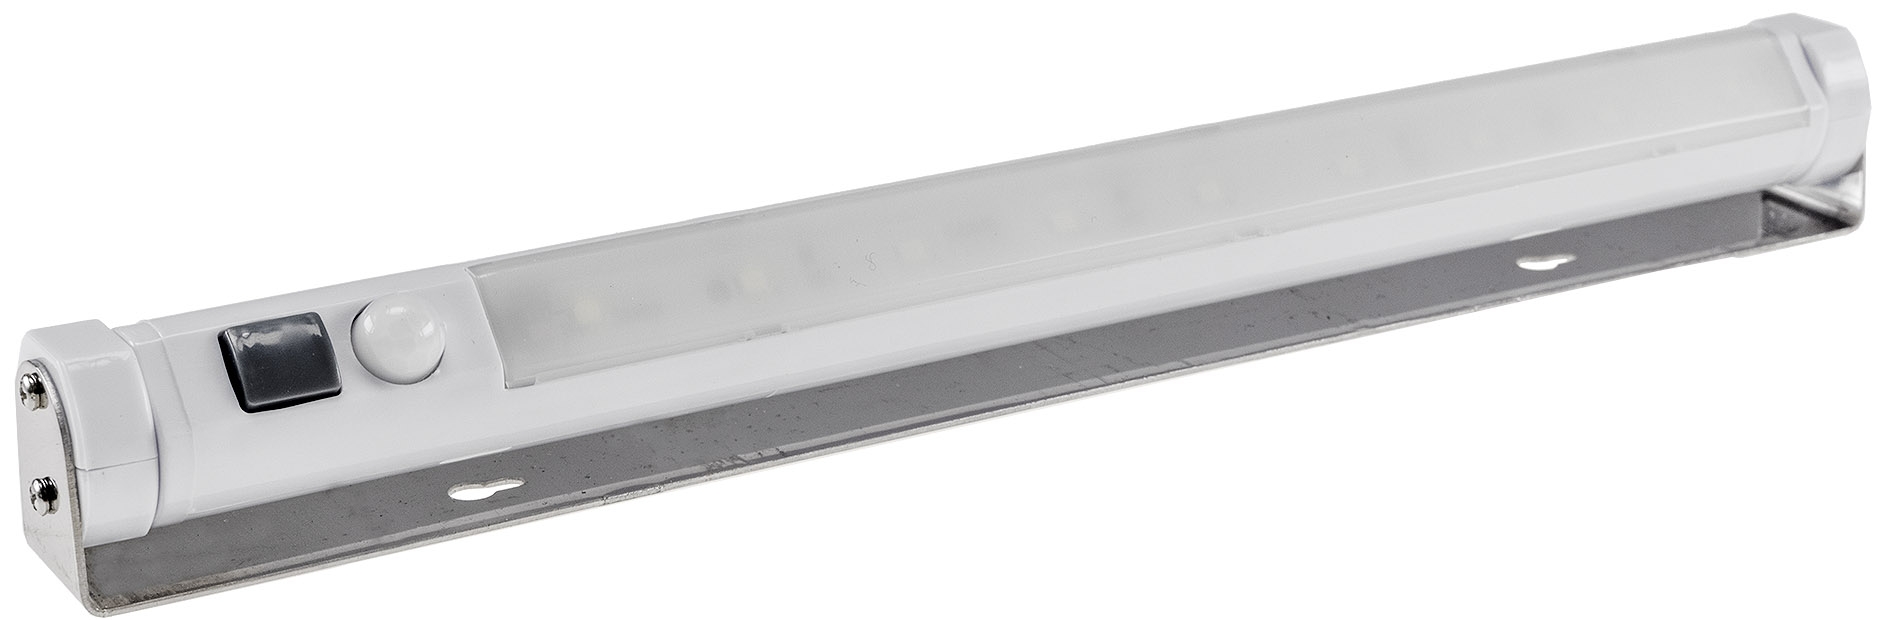 LED Unterbauleuchte mit Bewegungsmelder Batteriebet., 9 SMD LEDs, 80lm, weiß 